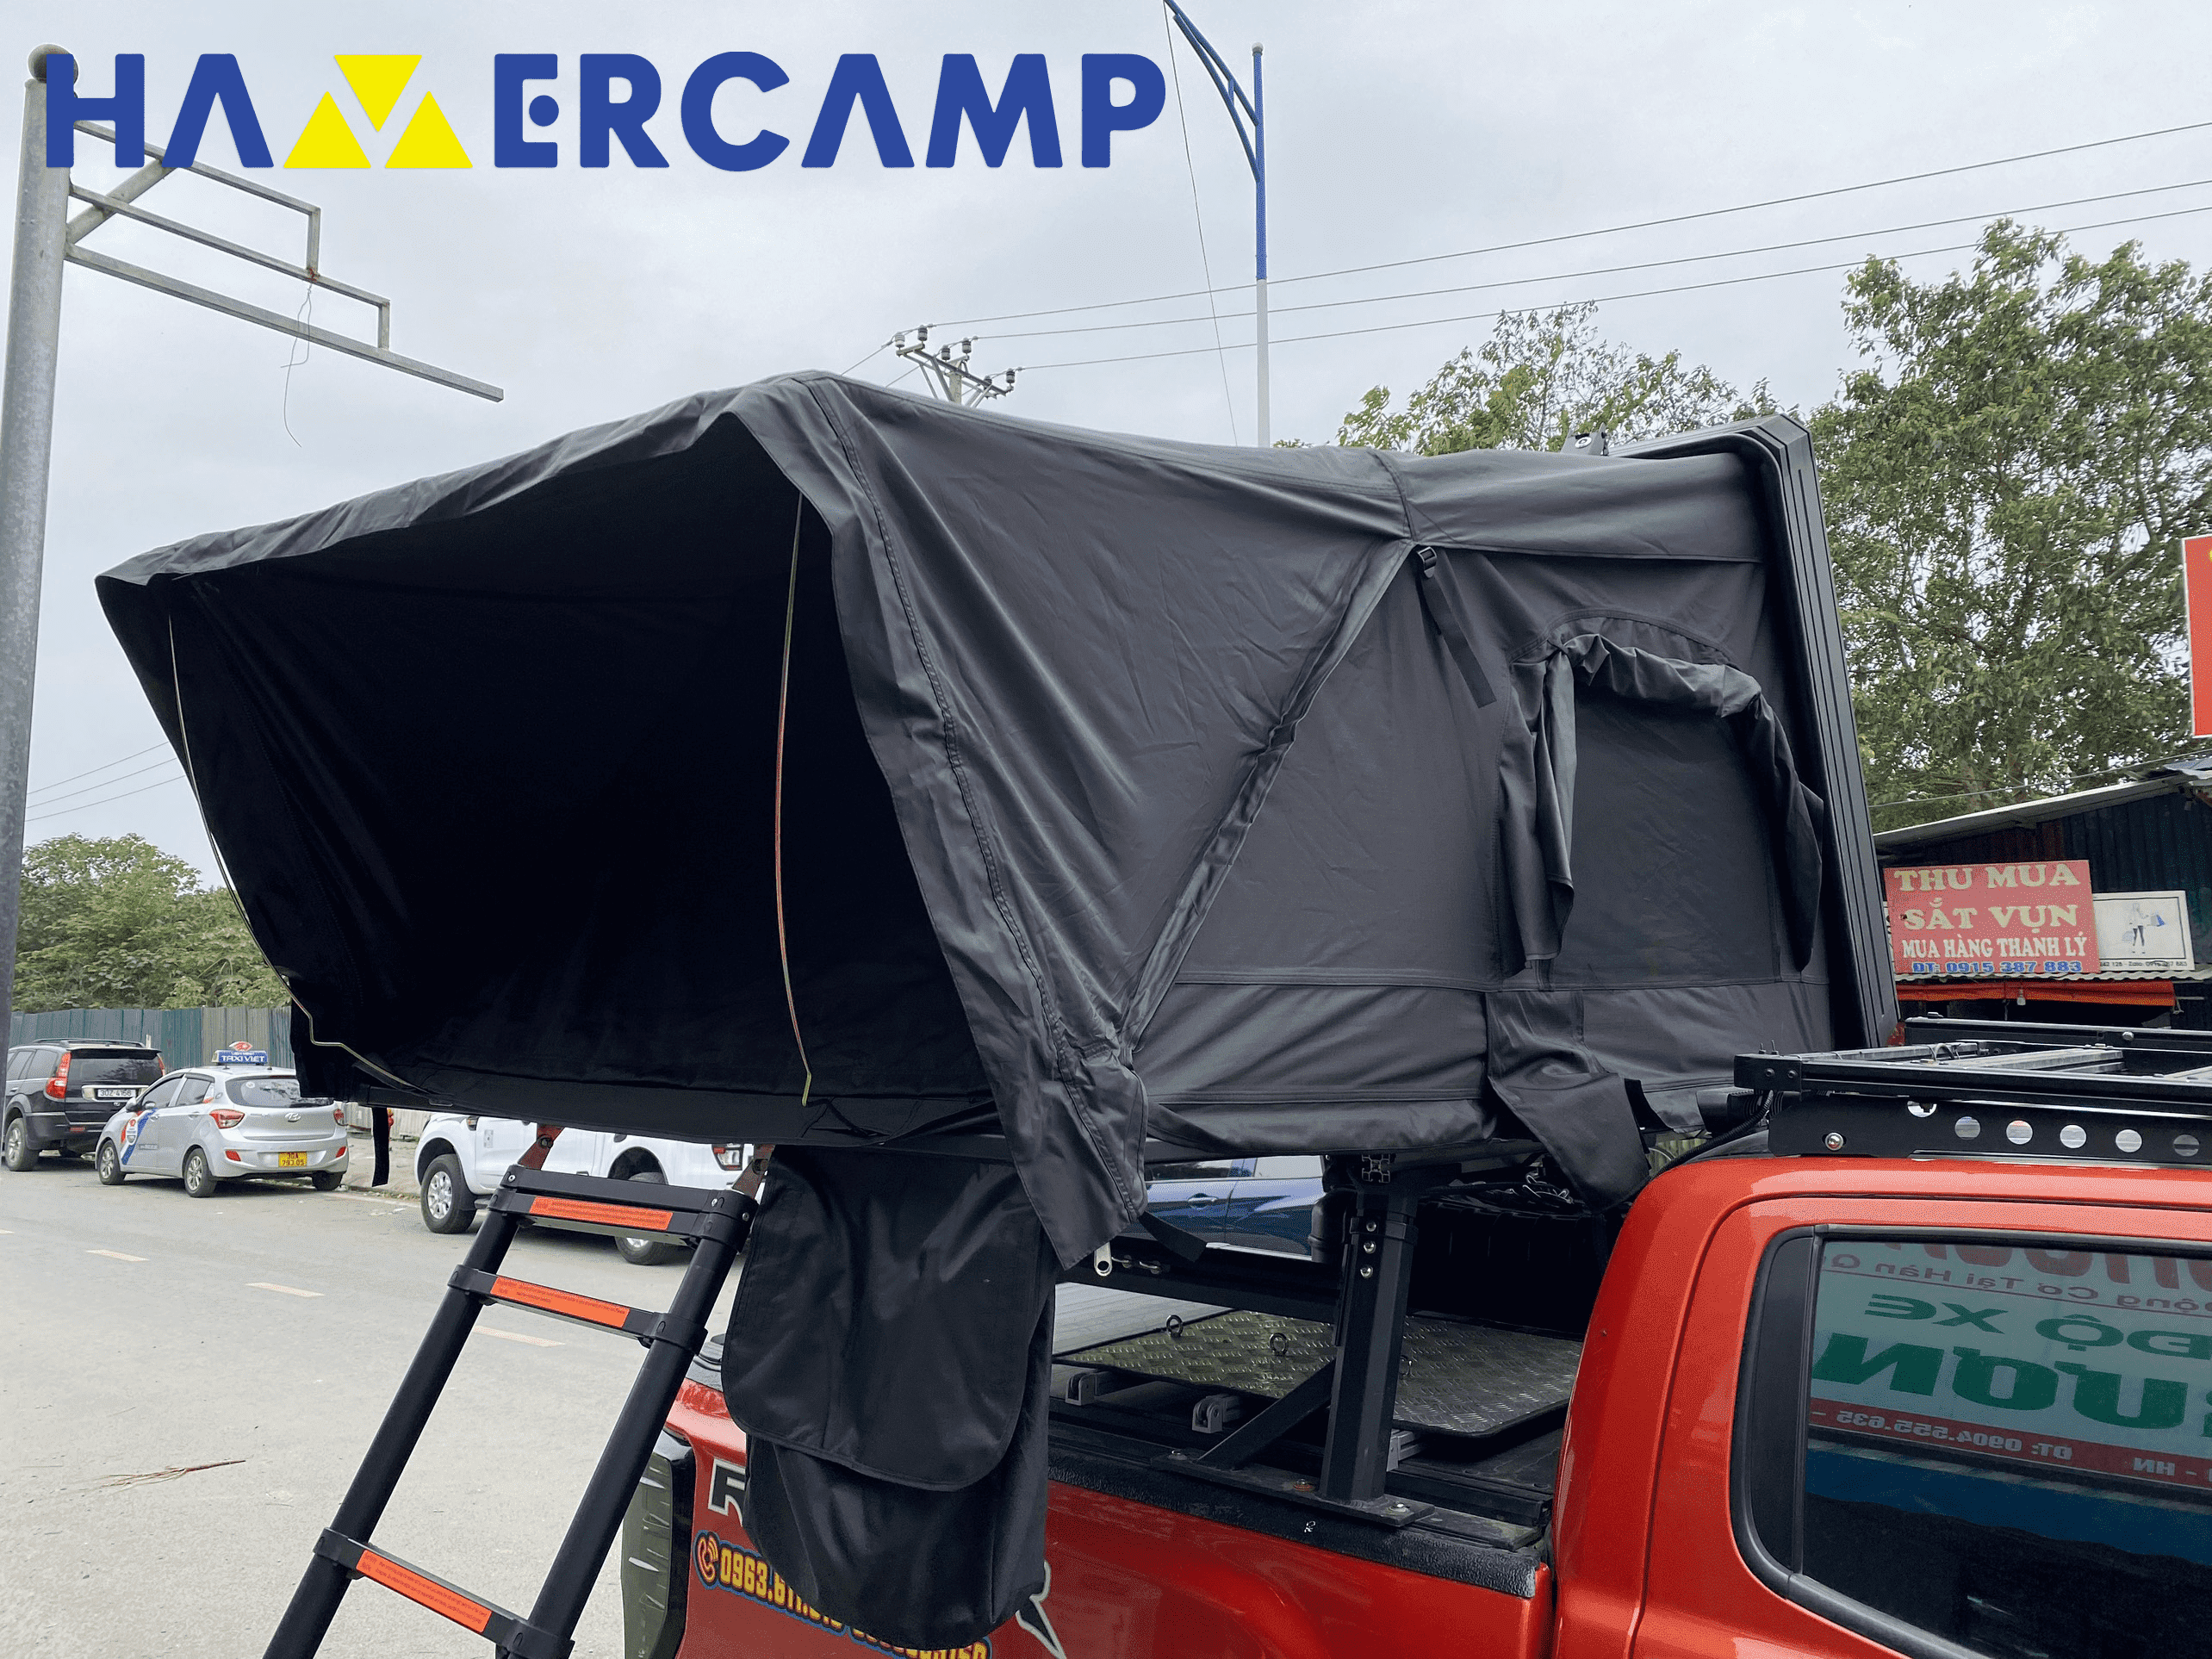 Lều Hamer camp skycamp lắp sau thùng xe ô tô